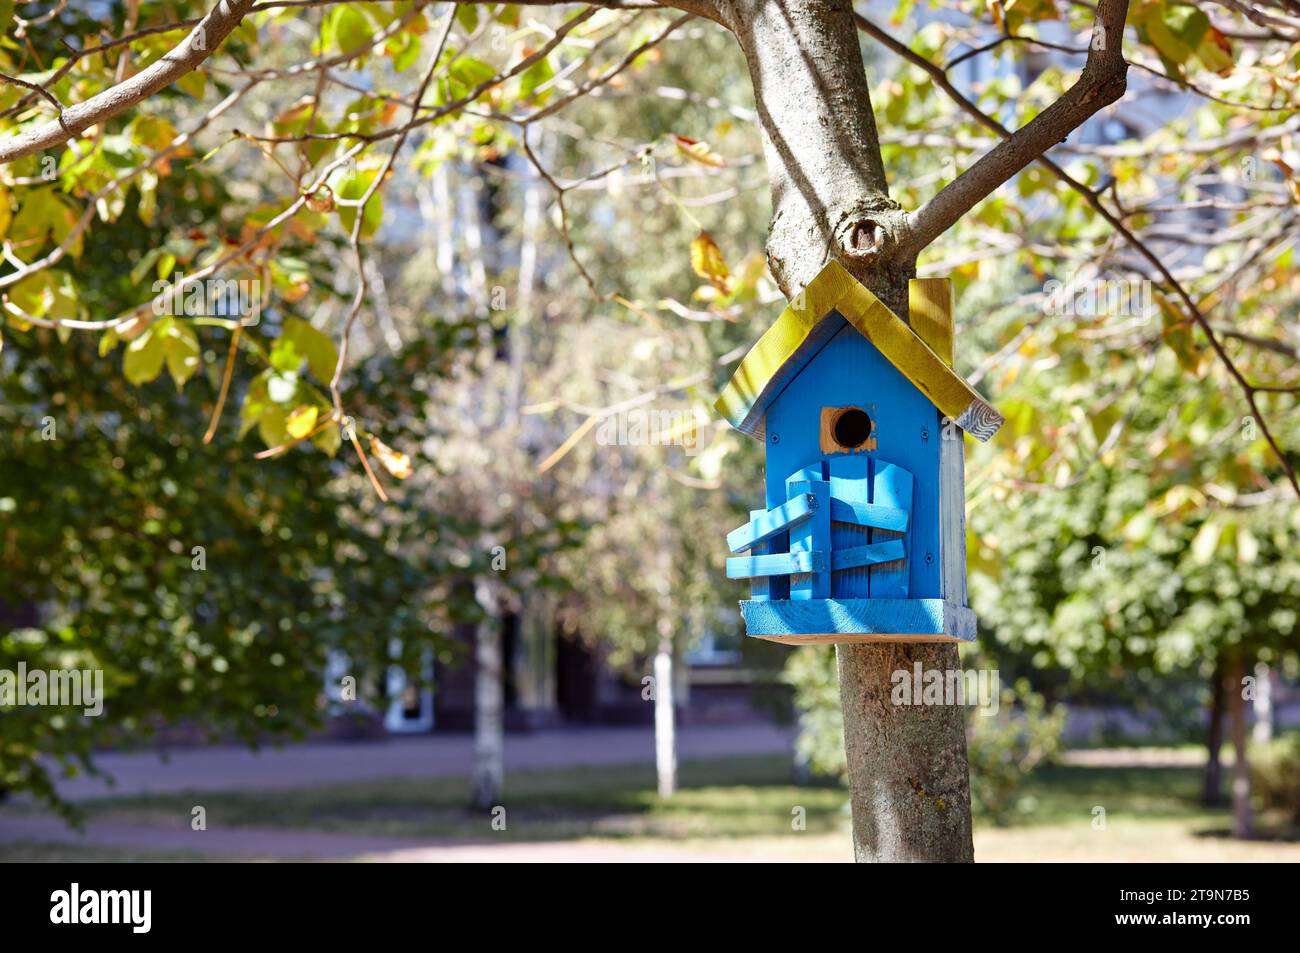 Un nichoir en bois accroché à un arbre. Mangeoire pour oiseaux dans le parc de la ville Banque D'Images